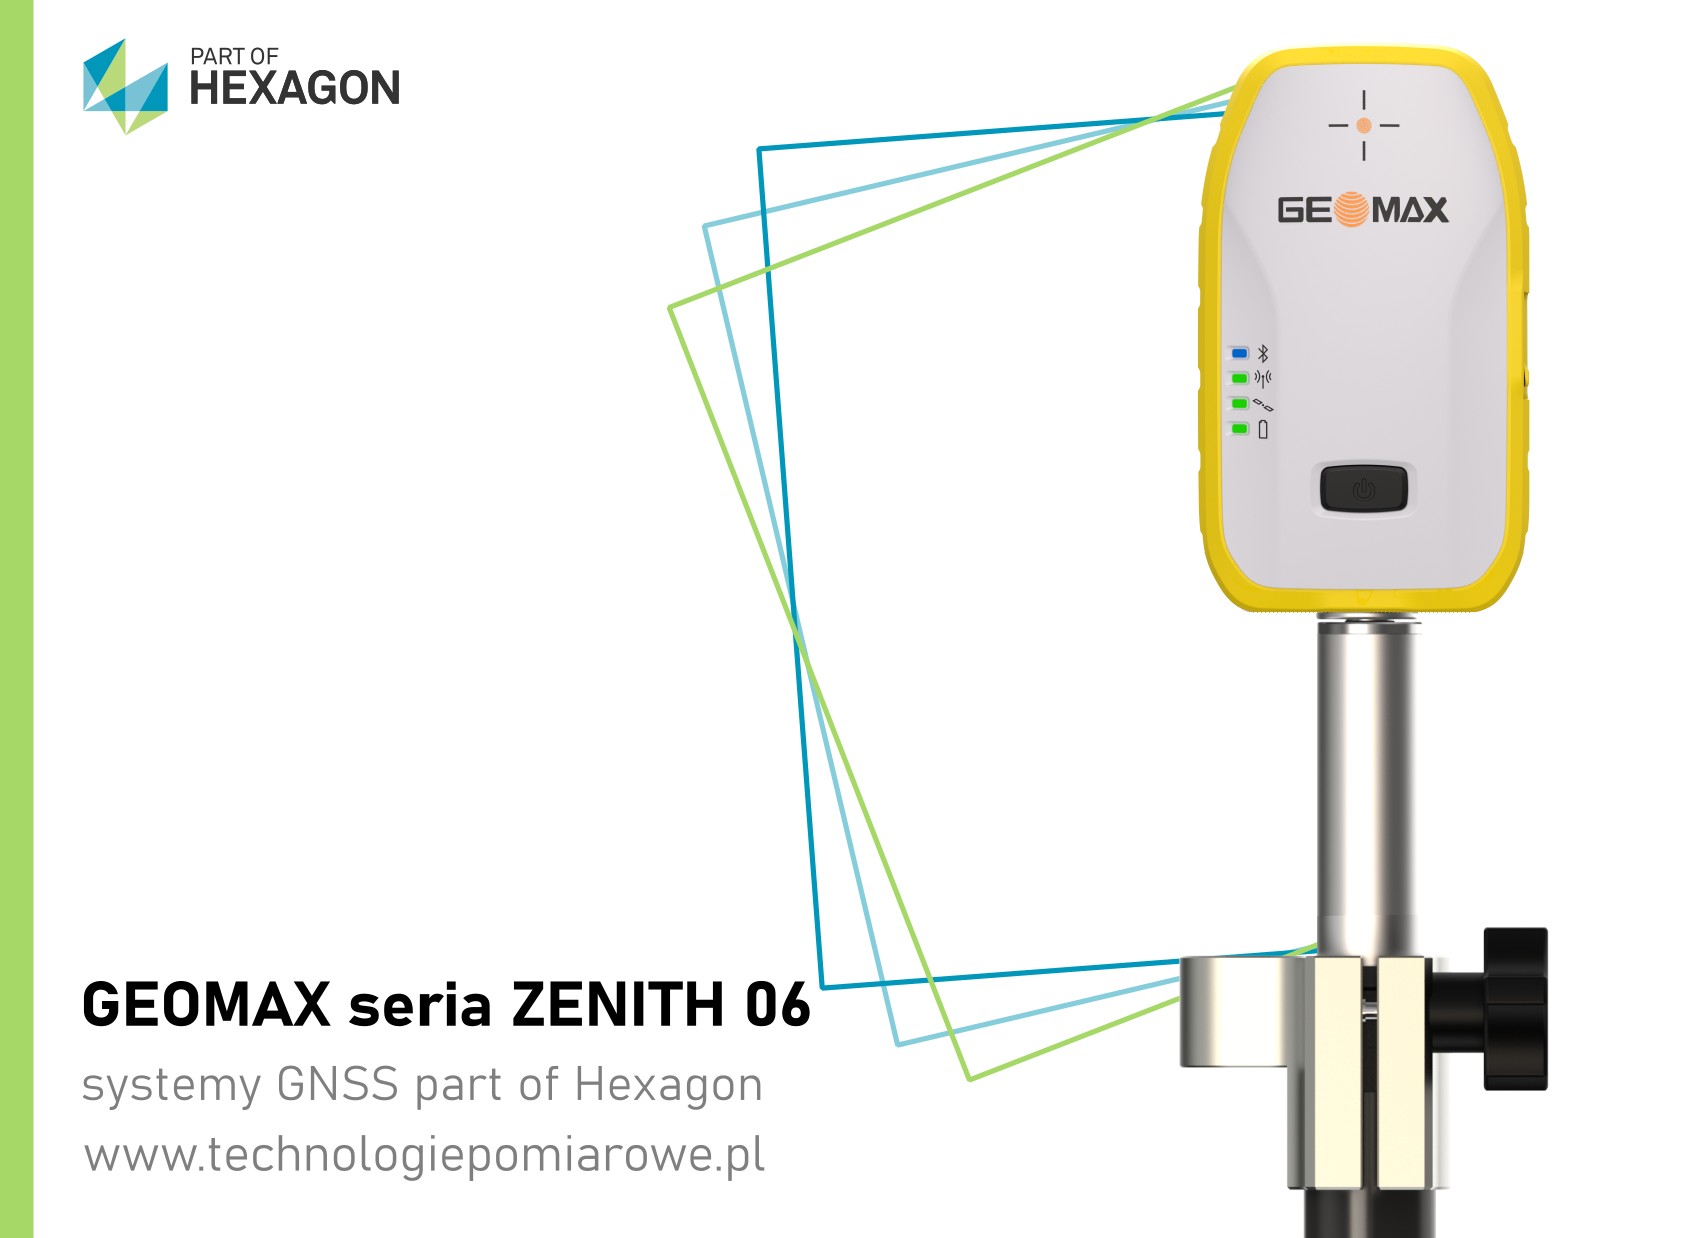 Odbiornik RTK Geomax Zenith 06; Geomax Zenith 06 precyzyjny odbiornik RTK GNSS; Geomax GPS GNSS odbiornik; Geomax szwajcarskie odbiorniki GNSS RTK RTN; Geodezyjny odbiornik GNSS RTK RTN szwajcarskiej marki Geomax model Zenith 06 Pro Tag; Aktualna cena odbiornik GNSS RTK RTN Geomax model Zenith 06 Pro Tag; geomax zenith 06; Zenith06 PRO GNSS marki Geomaxgeomax gps Zenith 06/06PRO; odbiornik gnss geomax zenith 06 pro; Geoline gps geomax; zestaw gnss geomax model zenith 06 pro tag; Geomax odbiorniki GNSS RTK RTN sprawdź ofertę; Zapraszamy promocja Geomax Zenith 06 PRO TAG; precyzyjny odbiornik RTK GNSS z pomiarem z wychyleniem geomax zenith 06 pro tag; odbiornik RTK z wychyleniem; geomax zenith 06 pro cena; geomax zenith 06 pro opinie; zenith 06 pro cena; GEOMAX Zenith 10; GeoMax GNSS; GPS GEOMAX ZENITH 06 PRO - RTN, RTK, STATYKA; odbiornik GNSS marki Leica; Leica GPS GNSS RTK RTN; zestaw gps Leica; zestaw RTK Leica Geosystems; cena odbiornik Leica; cena odbiornik Leica GS18; odbiornik GNSS Leica; Leica GS18T cena; Ranking GPS geodezyjnych; Odbiornik GNSS cena; Leica GS16 cena; Tani odbiornik GPS RTK; Leica GS18T price; GPS geodezyjny cena; GPS Leica cena; Leica GS18 T; Sprzęt geodezyjny - Odbiorniki GPS; Używany odbiornik GPS LEICA GS15 z kontrolerem CS15; Odbiornik GPS + GLONASS marki Leica model GS15; odbiornik Trimble R12; Trimble R12 cena; Trimble R10 Sprzedam; Trimble R12 price; Trimble R12 eBay; Trimble R12 opinie; Trimble R12 IMU; Trimble R10 cena; Trimble Geodezja; trimble r10 sprzedam; ranking gps geodezyjnych; geomax zenith 25 cena; trimble r10 cena; geomax zenith 06 opinie; Odbiornik z wychyleniem model Zenith 06 TAG marki Geomax; Zintegrowany czujnik wychylenia zestaw RTK GNSS; odbiornik ruchomy GNSS RTK; odbiornik GNSS RTL z systemem TILT; Oferta systemów geodezyjnych: odbiornik GNSS RTK marki SOUTH model S82T; Sprawdź aktualne promocja odbiornik gnss rtk SOUTH model S82T; Aktualna cena odbiornik GNSS RTK RTN SOUTH model S82T; Komis sprzętu geodezyjnego oferuje odbiornik gnss rtk marki SOUTH model S82T; odbiornik GNSS Kolida; kolida k5 infinity; kolida s680p cena; kolida h3; pentax g6ti; geopryzmat raport gps; gps kolida k5 infinity; kolida ufo; kolida k58+; używany sprzęt geodezyjny; tani zestaw RTK; tani zestaw GNSS; tani odbiornik RTK; tani zestaw odbiornika GNSS; odbiornik SOUTH S82T; sklep geodezyjny odbiorniki RTK GNSS; chiński gps rtk; tani odbiornik gps rtk; jaki gps dla geodety; ruide gps opinie; zestaw gps rtk; gps ruide; gps w geodezji; gps kolida; odbiornik gnss rtk south galaxy G6 IMU; odbiornik gnss rtk south galaxy g6; odbiornik gnss rtk southg1; odbiornik gnss rtk southg1 plus; odbiornik gnss rtk south s660; odbiornik gnss rtk south s86; odbiornik gnss rtk kolida k5 infinity; odbiornik gnss rtk kolida K9T; odbiornik gnss rtk kolida K1; odbiornik gnss rtk kolida K20; odbiornik gnss rtk kolida K3; odbiornik gnss rtk kolida K5 IMU; odbiornik gnss rtk kolida K5 UFO; odbiornik gnss rtk kolida 680; odbiornik gnss rtk stonex S900; odbiornik gnss rtk stonex S850; odbiornik gnss rtk stonex S700; odbiornik gnss rtk ruide; pulsar; odbiornik gnss rtk ruide nova R6; odbiornik gnss rtk ruidemeteor S680; odbiornik gnss rtk ruide r90i;